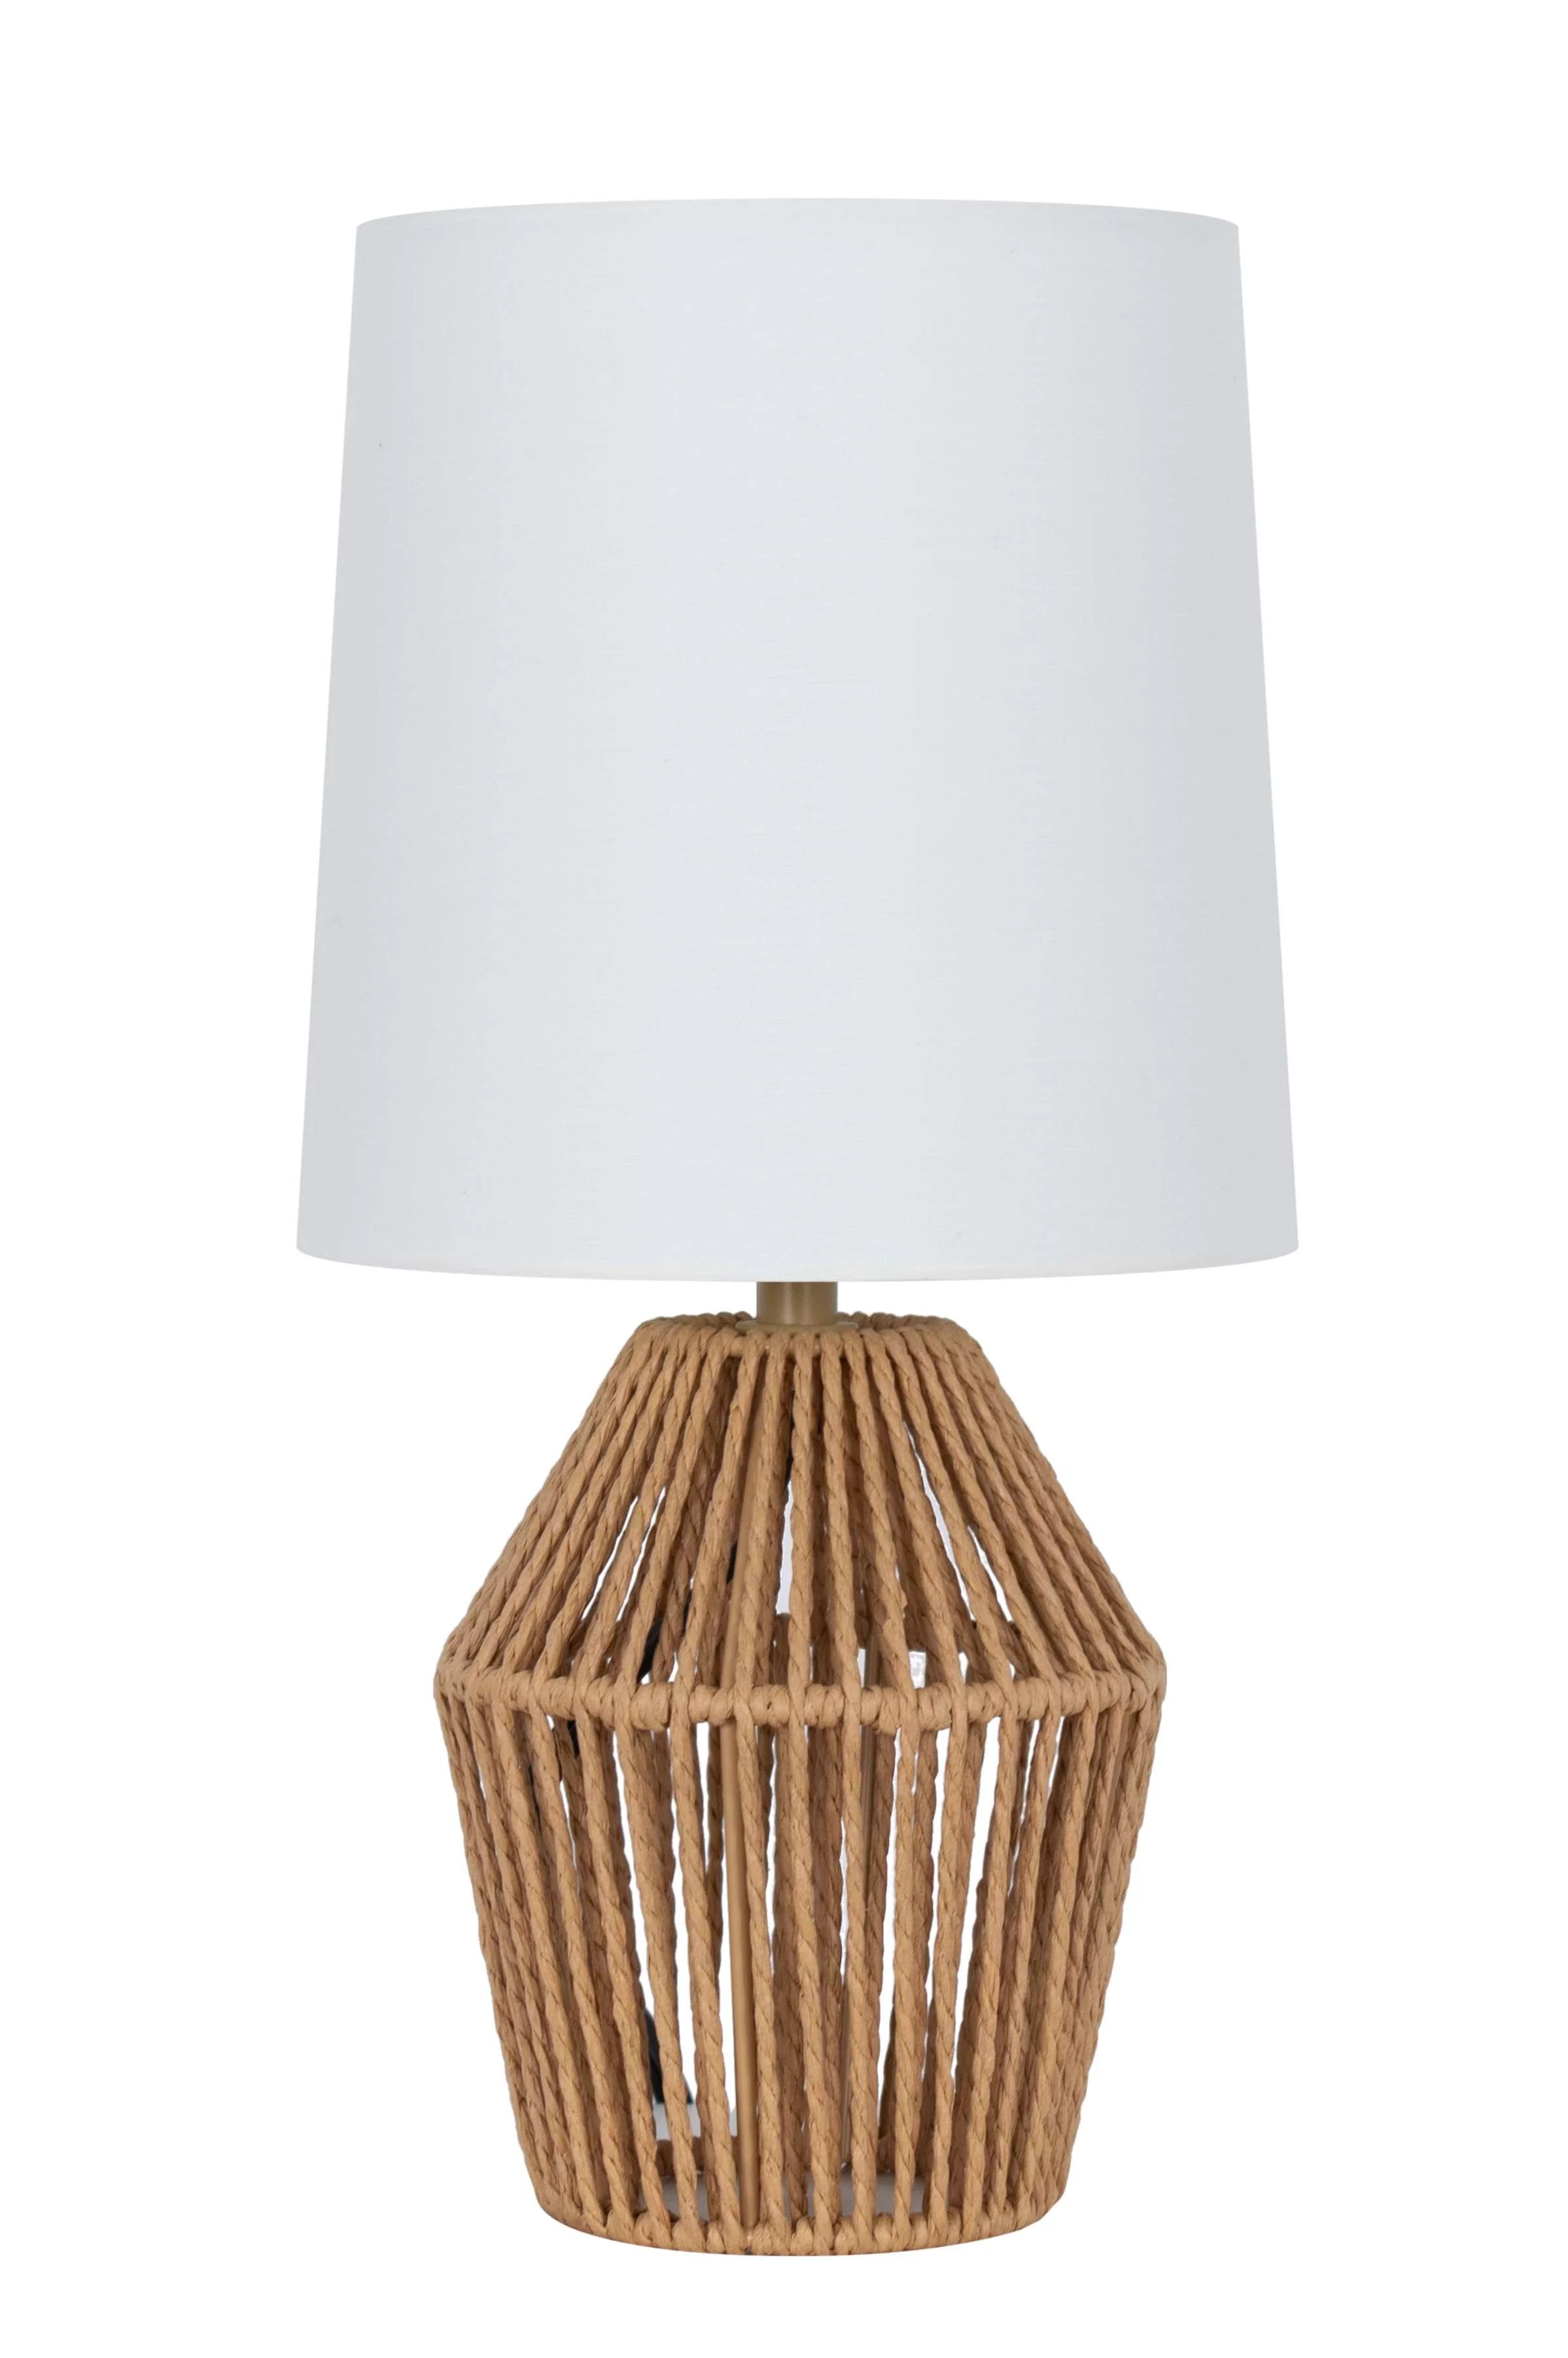 Mainstays 12.75" Rope Mini Lamp, Brown, 5.75 x 6.5 x 6.5" Lamp Shade | Walmart (US)